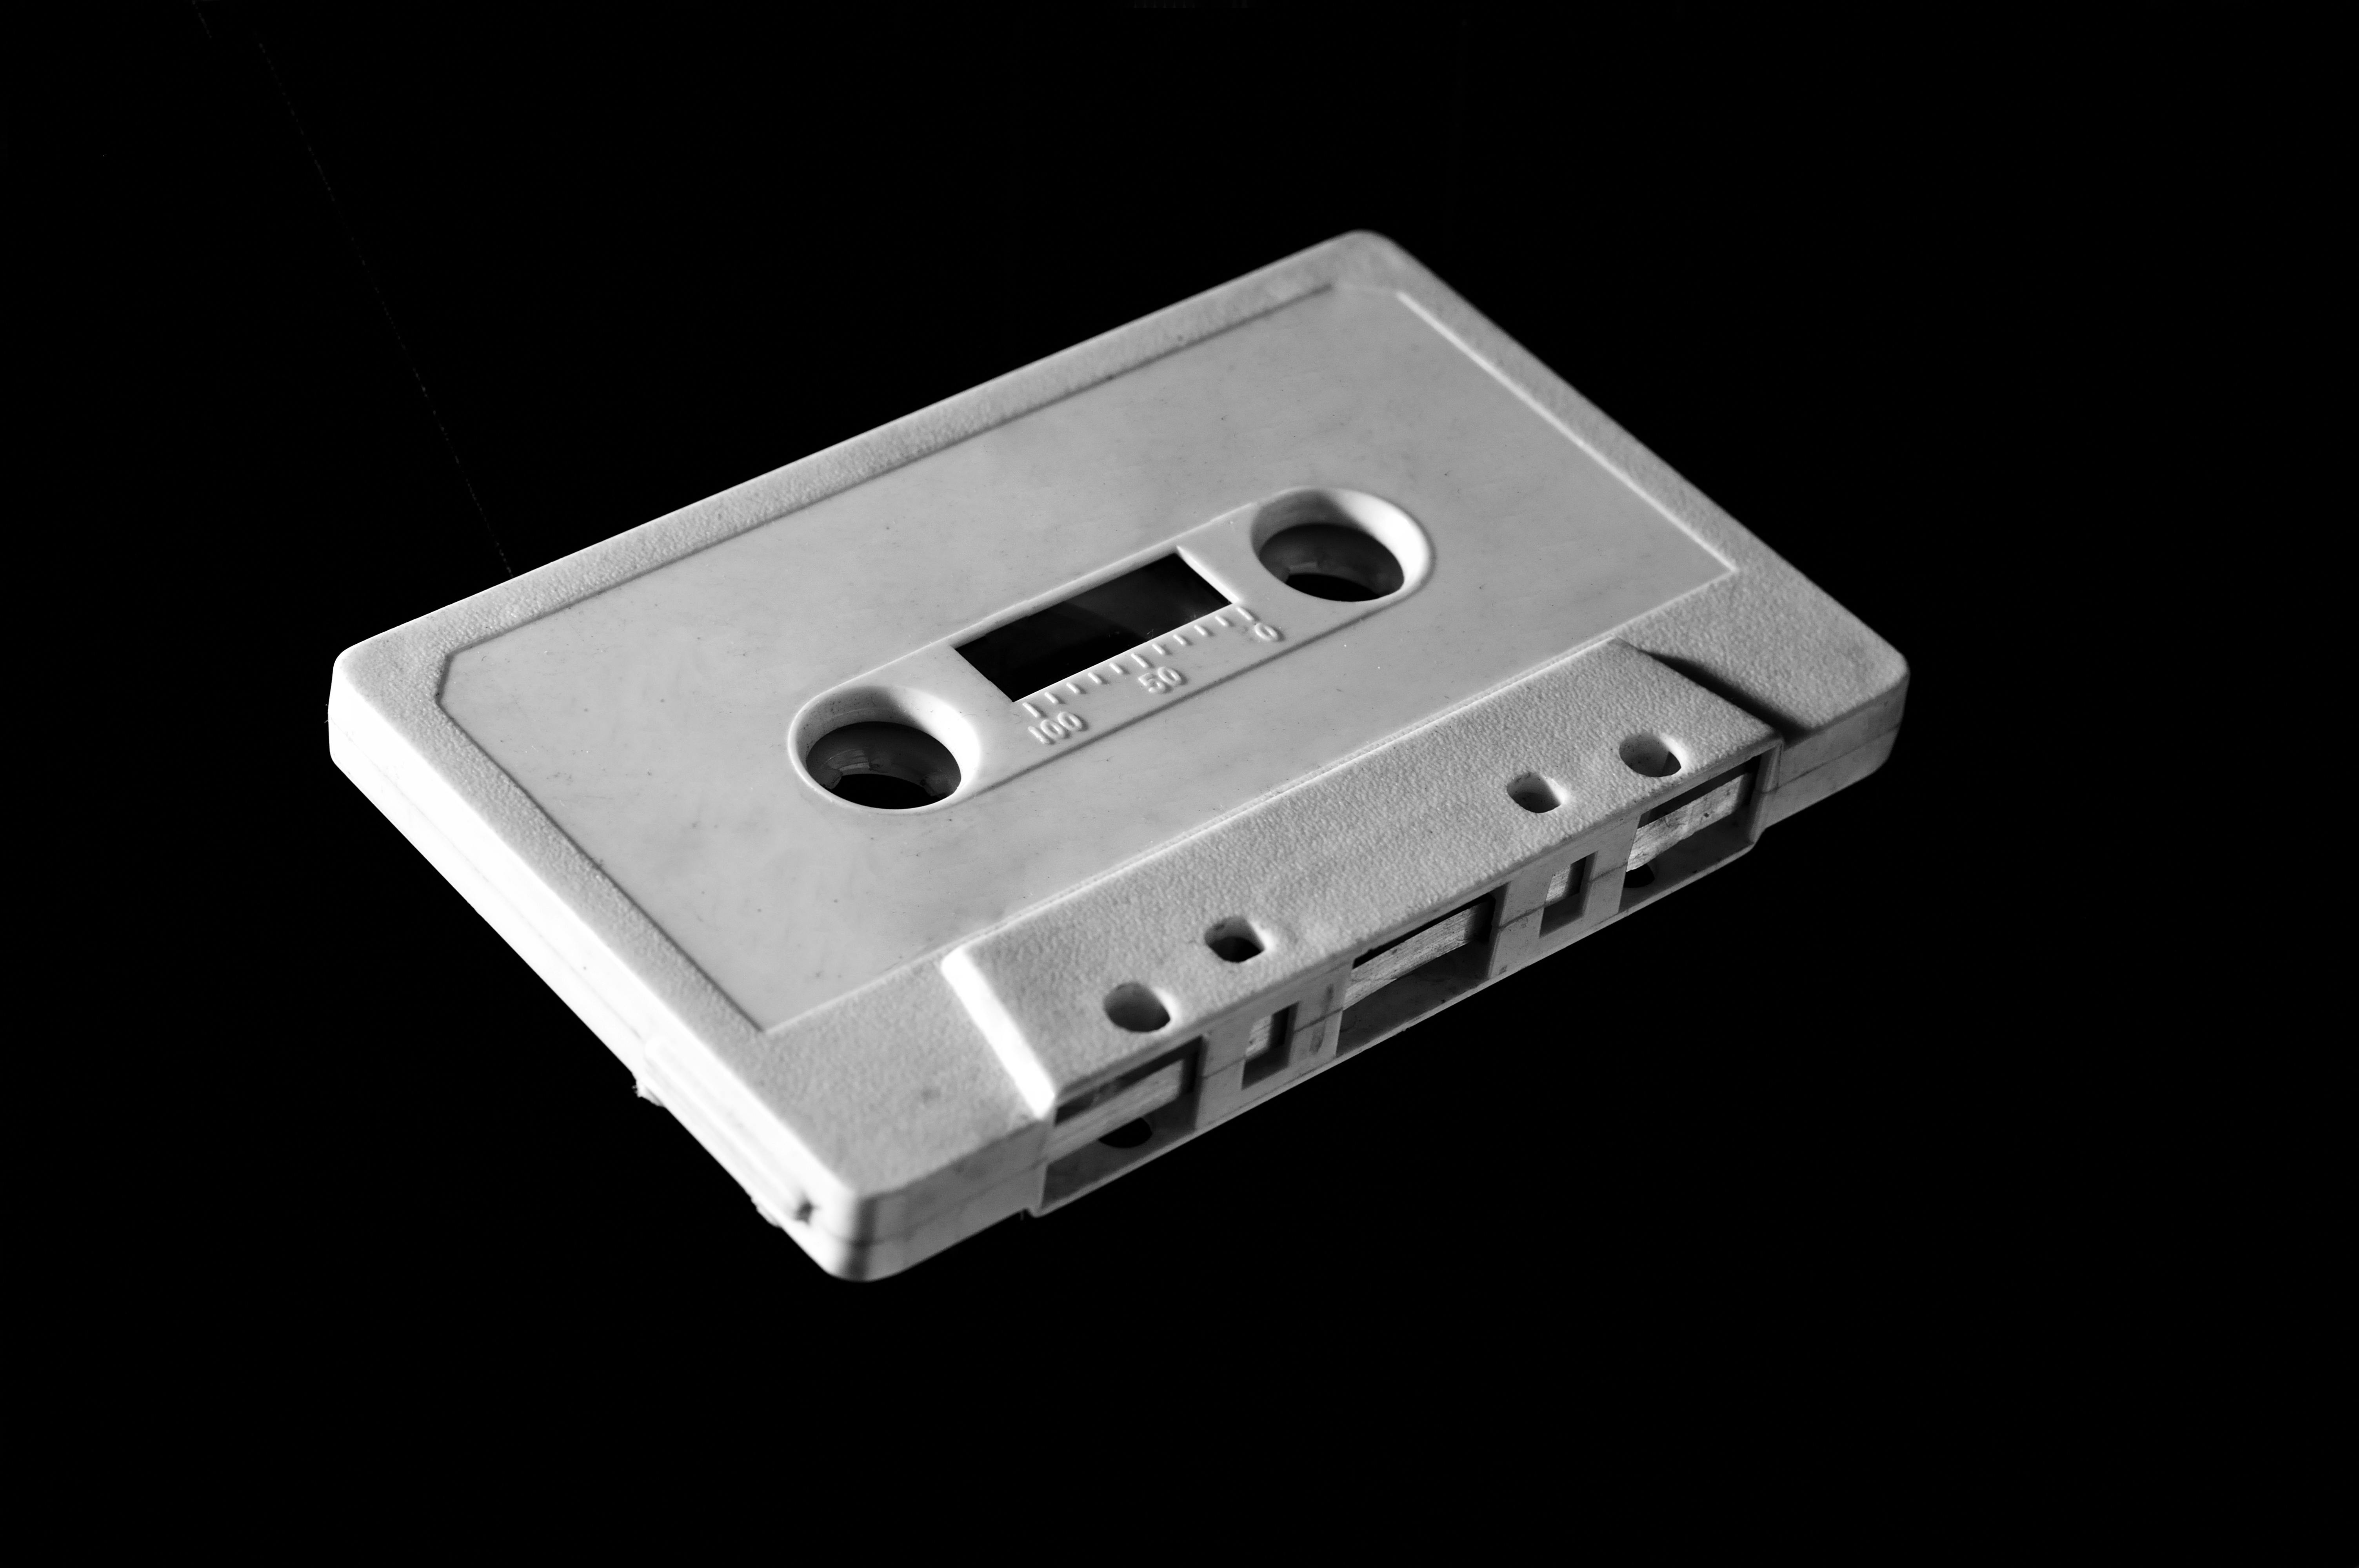 white cassette tape